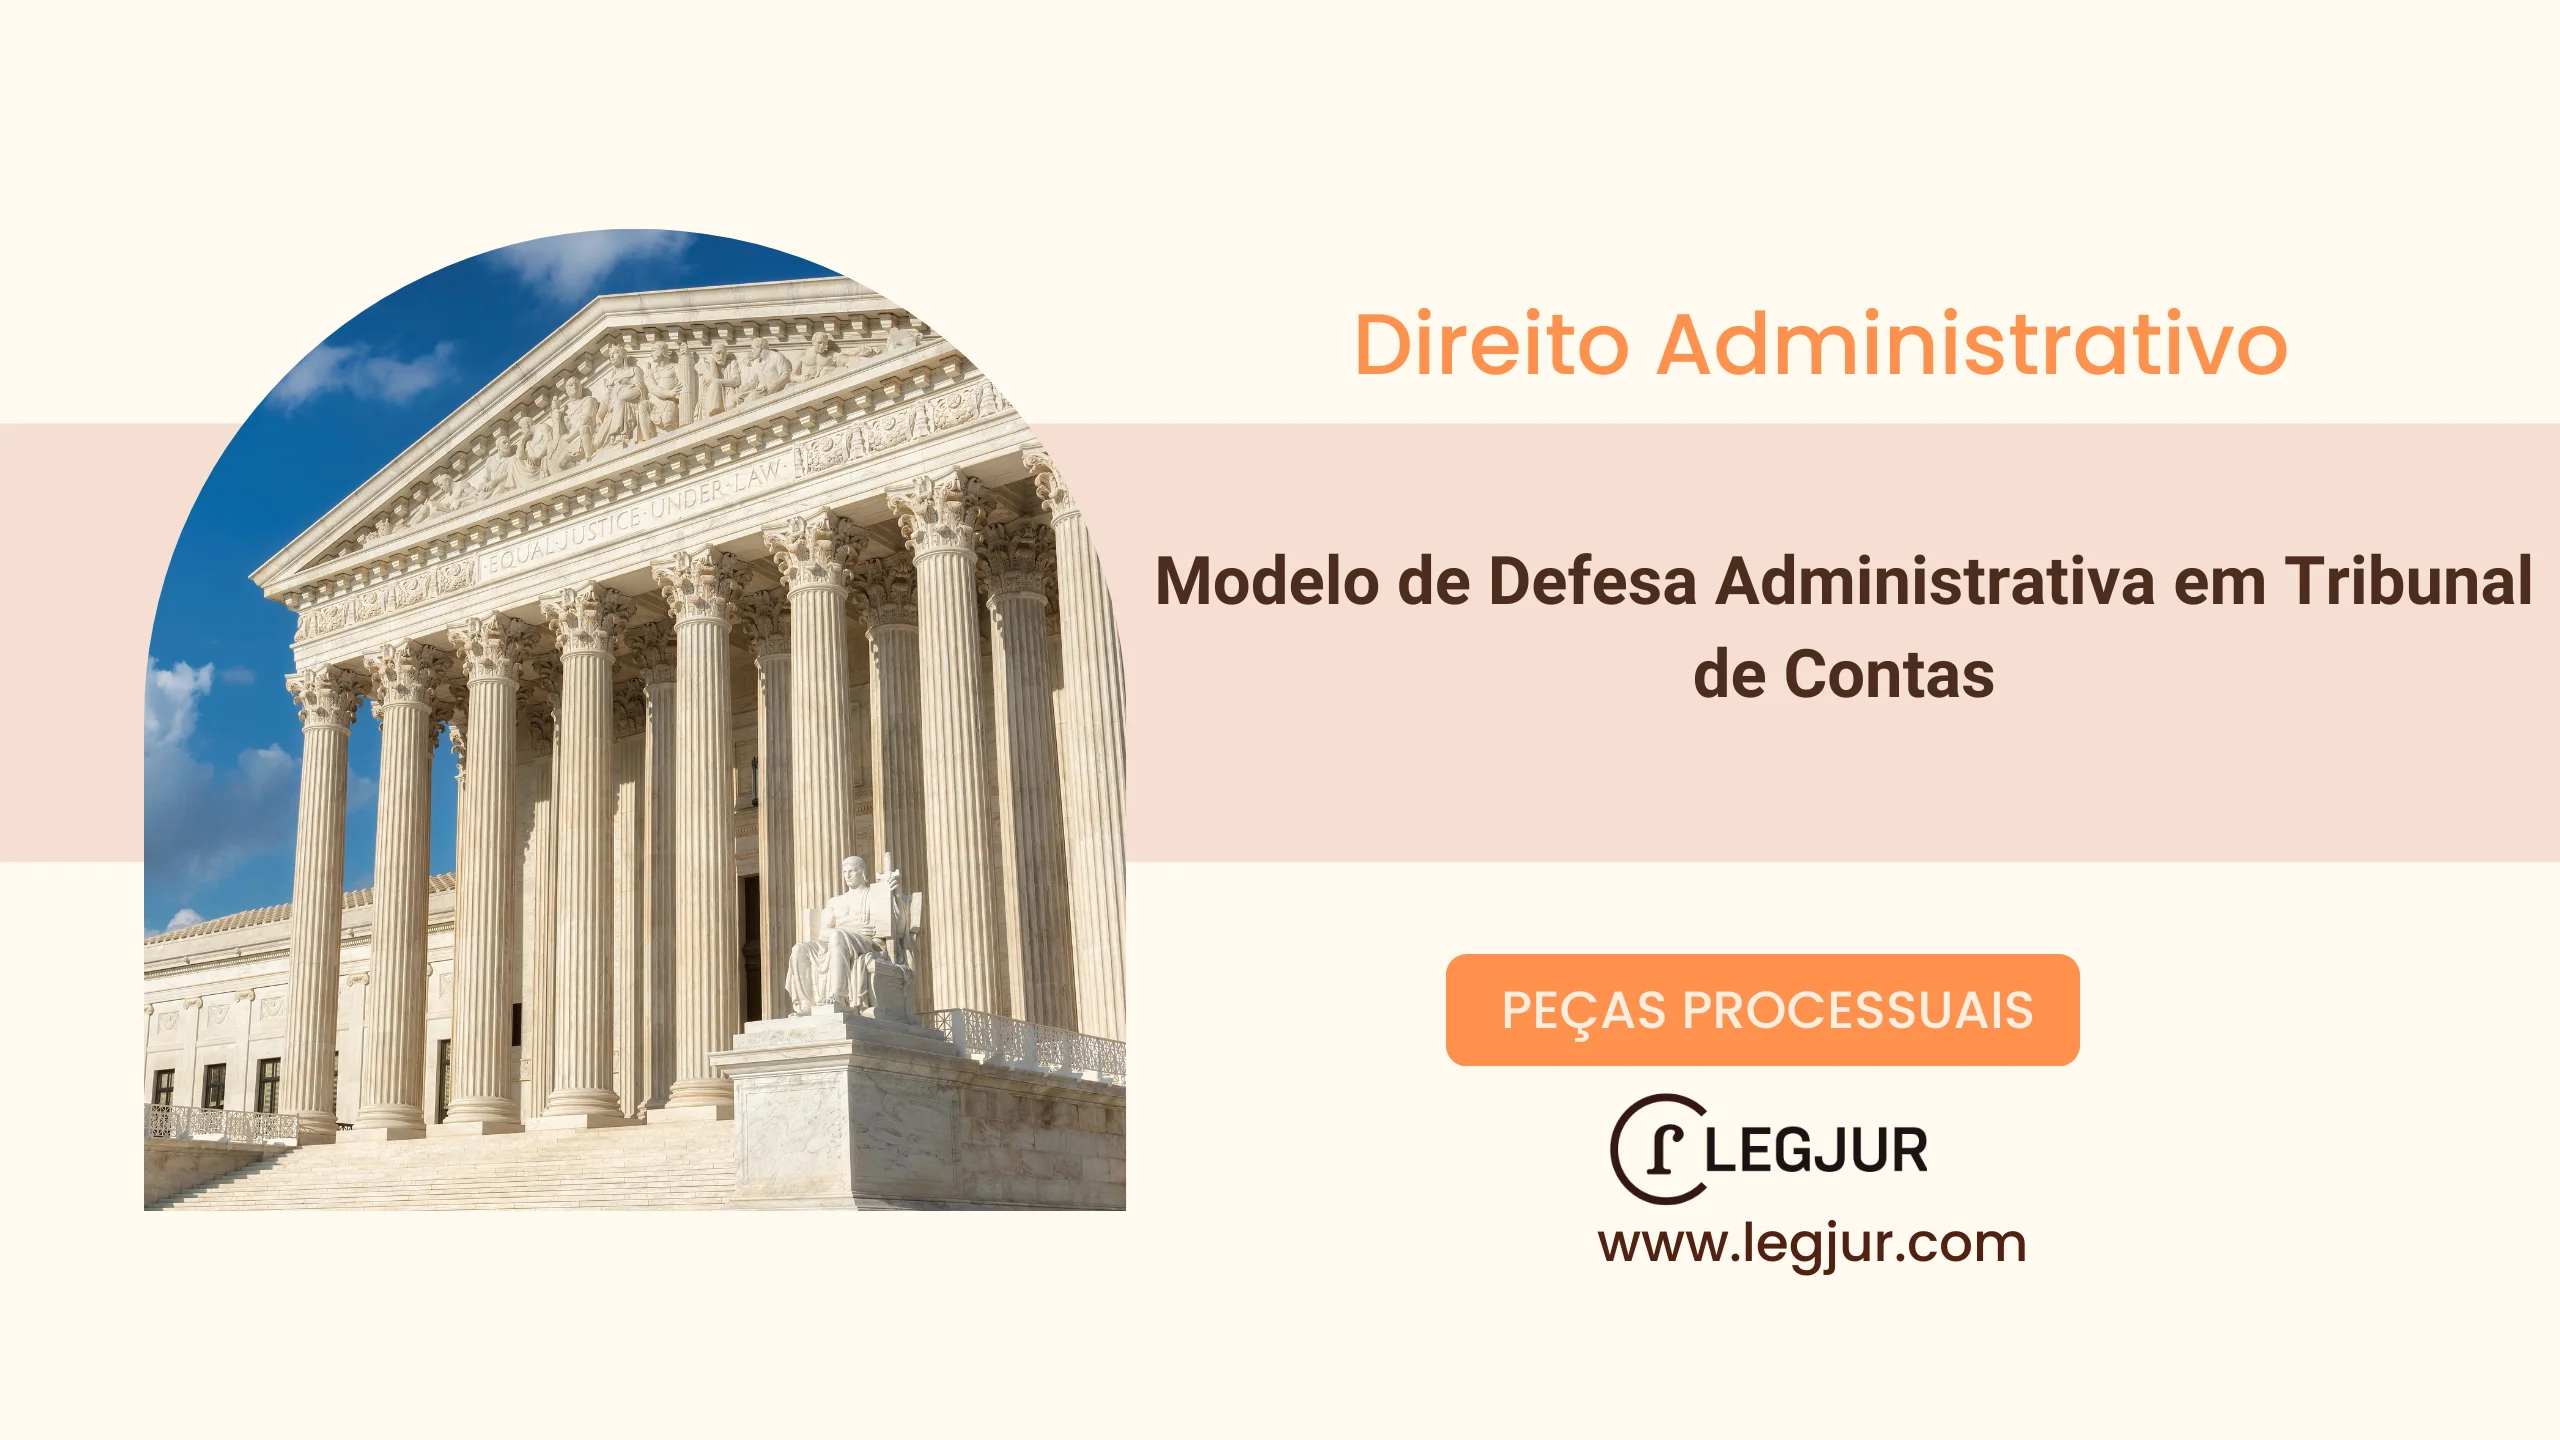 Modelo de Defesa Administrativa em Tribunal de Contas